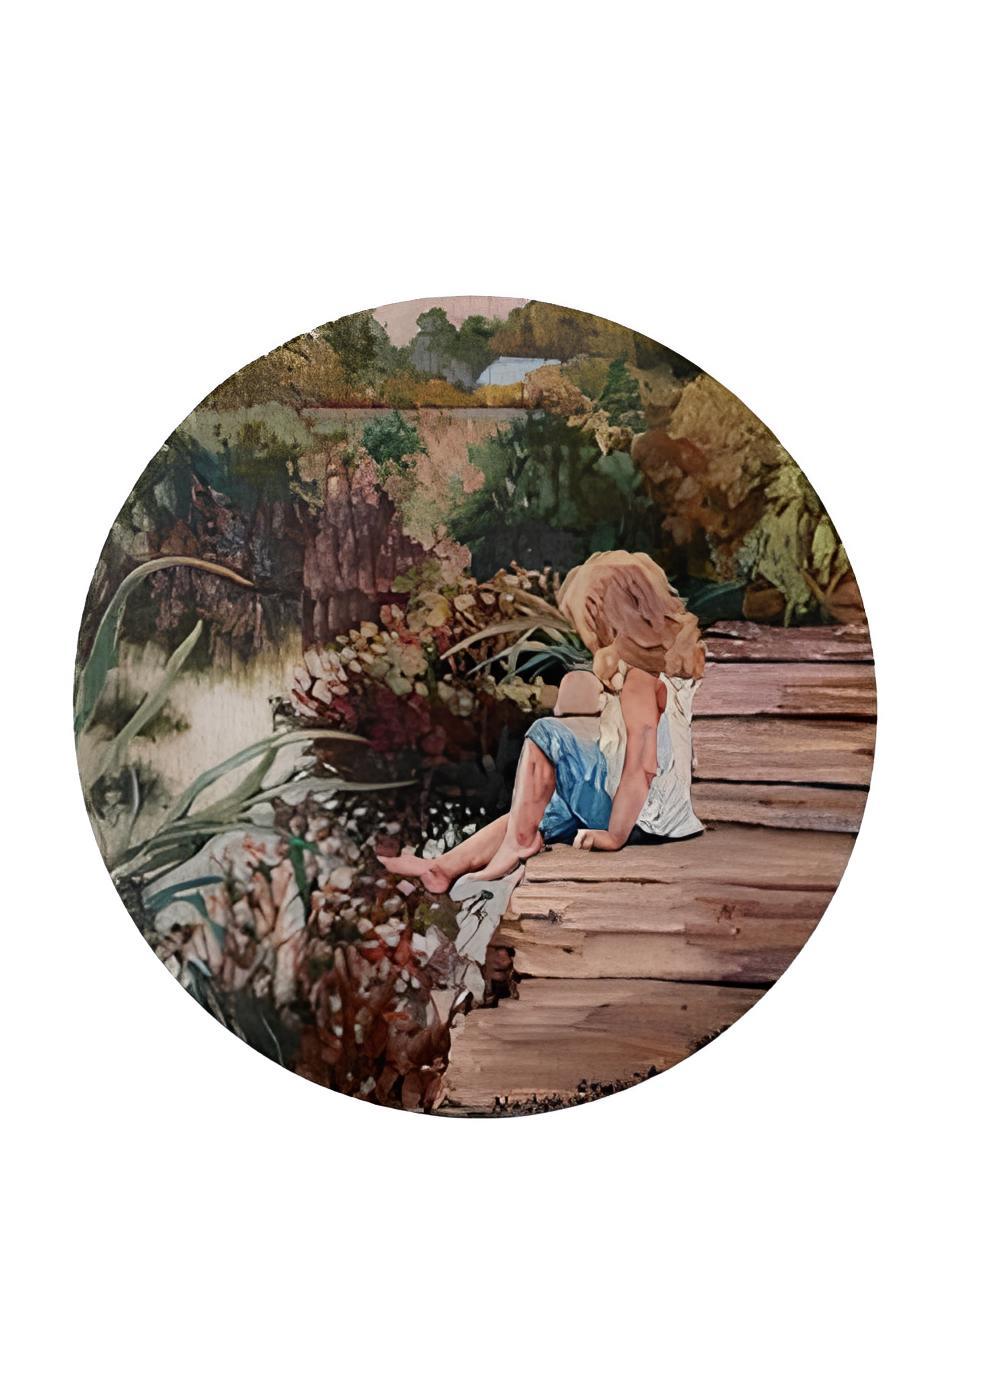 Sommergeschichten. In der  zugewachsener Teich – Painting von Nadezda Stupina